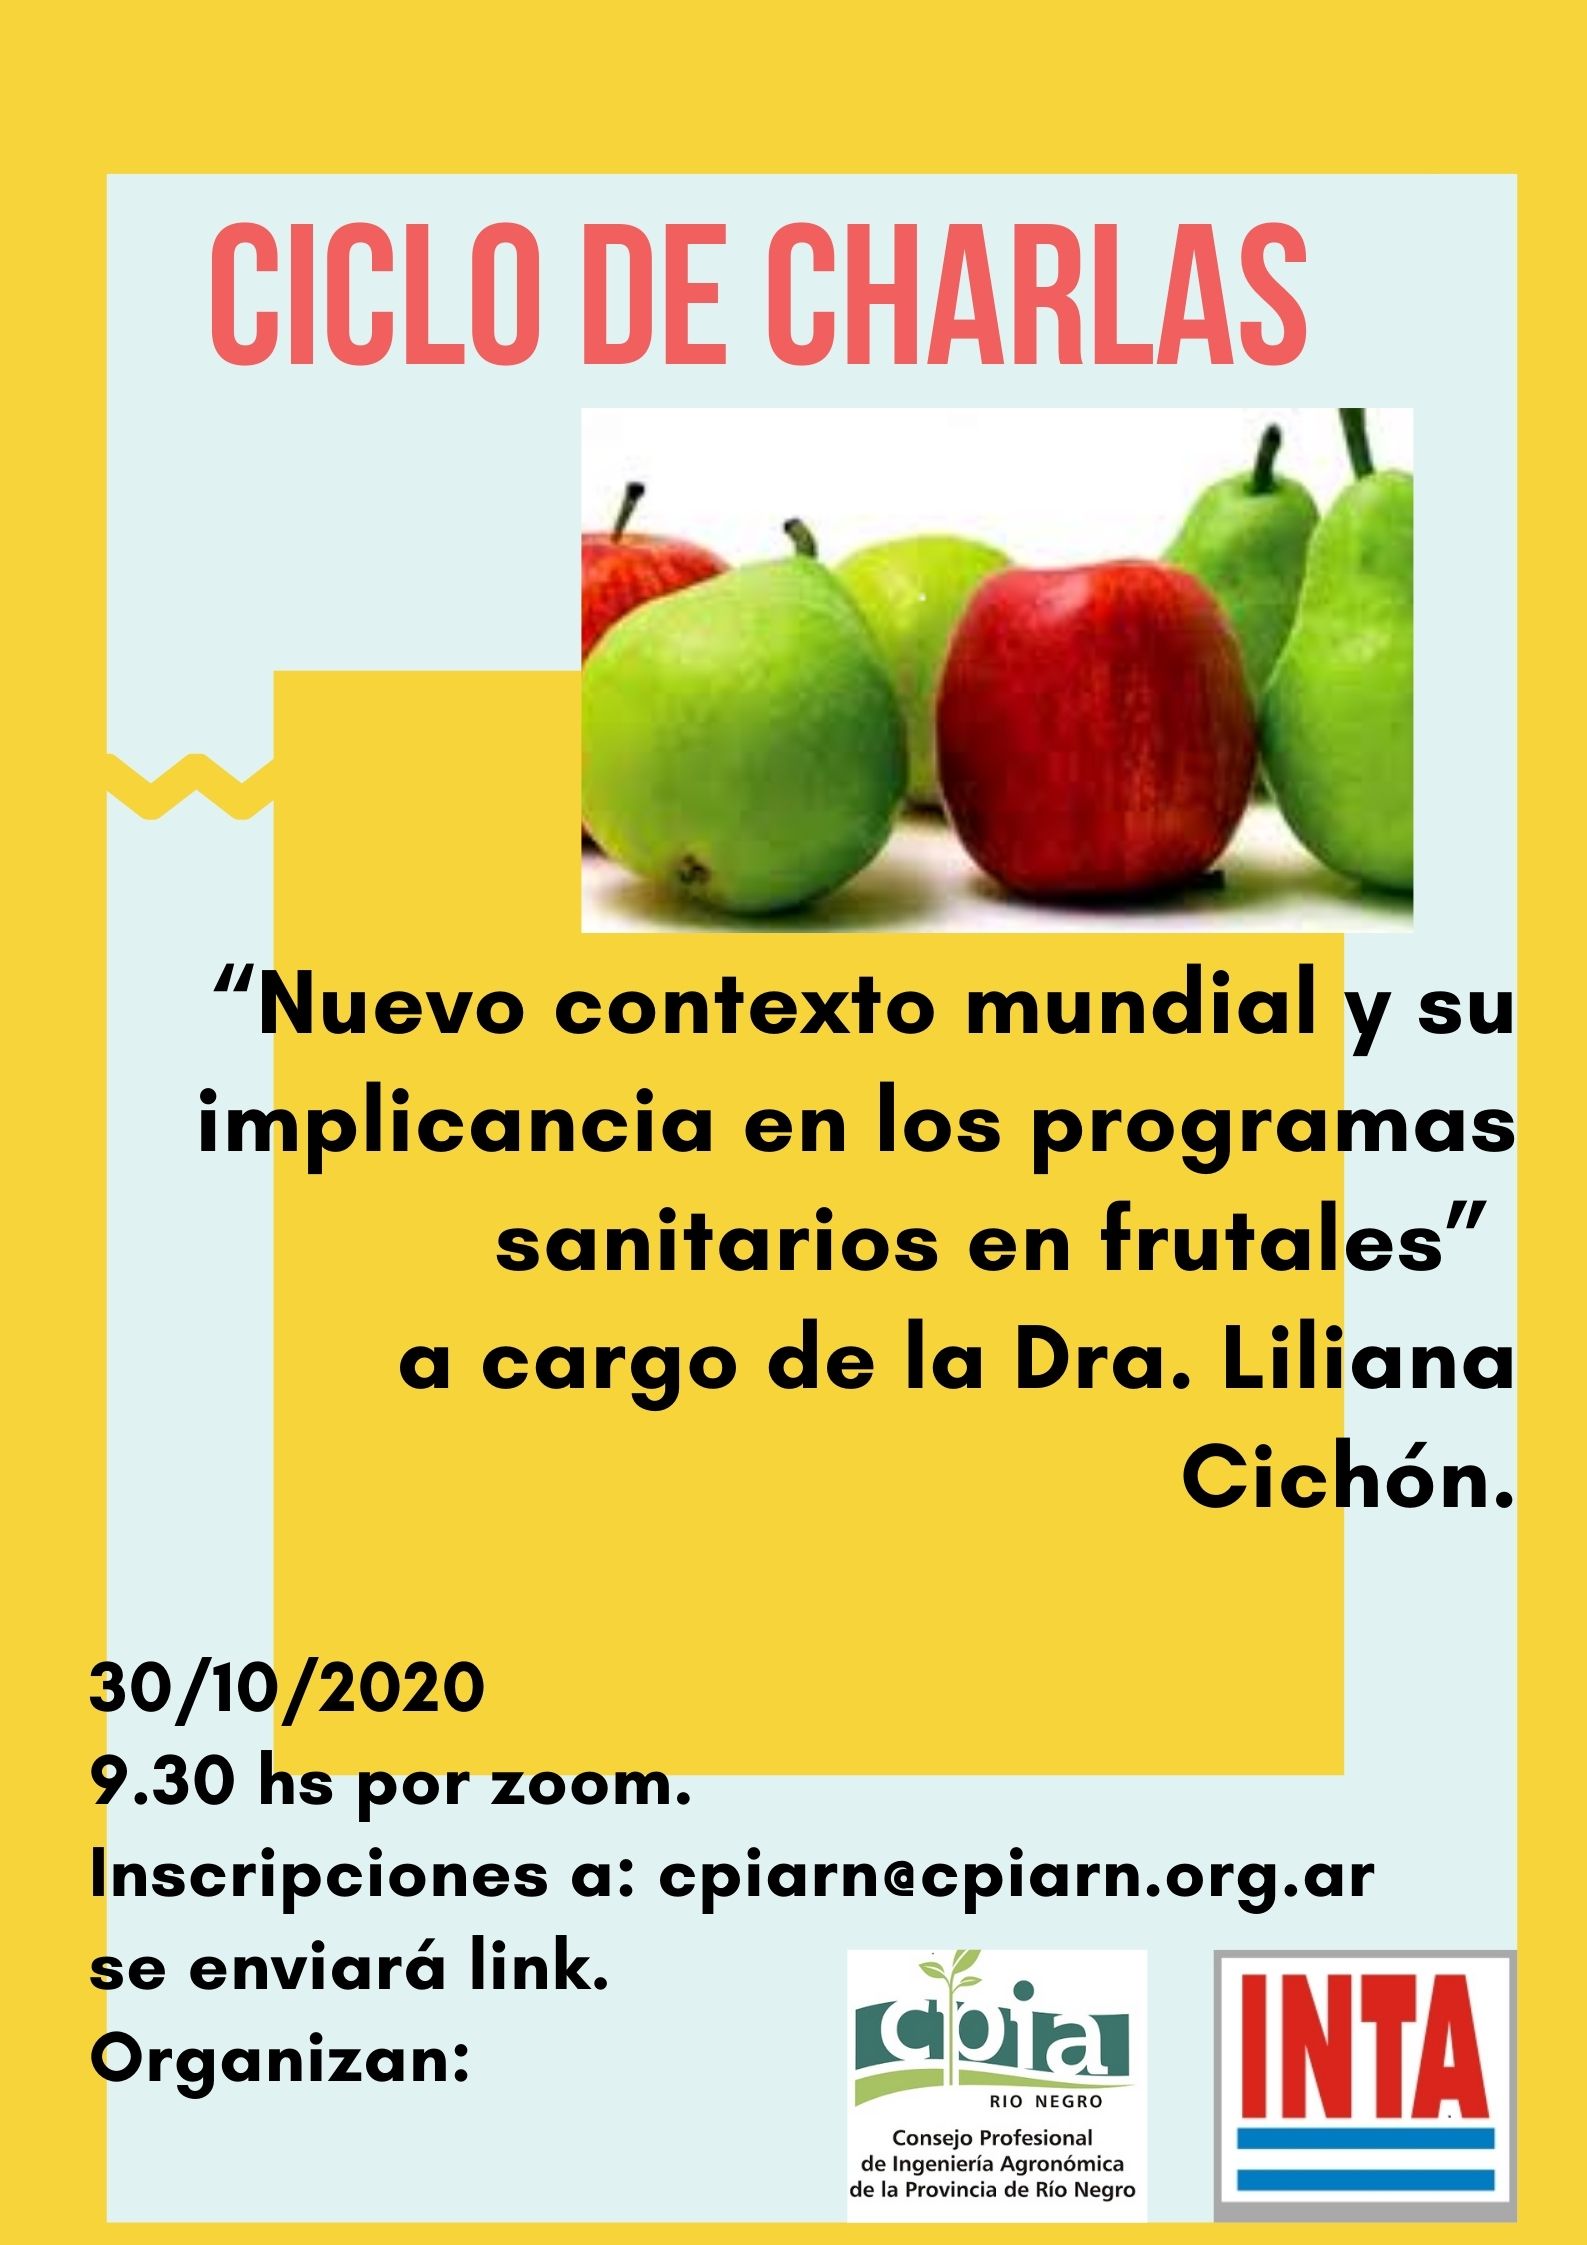 “Nuevo contexto mundial y su implicancia en los programas sanitarios en frutales” a cargo de la Dra. Liliana Cichón